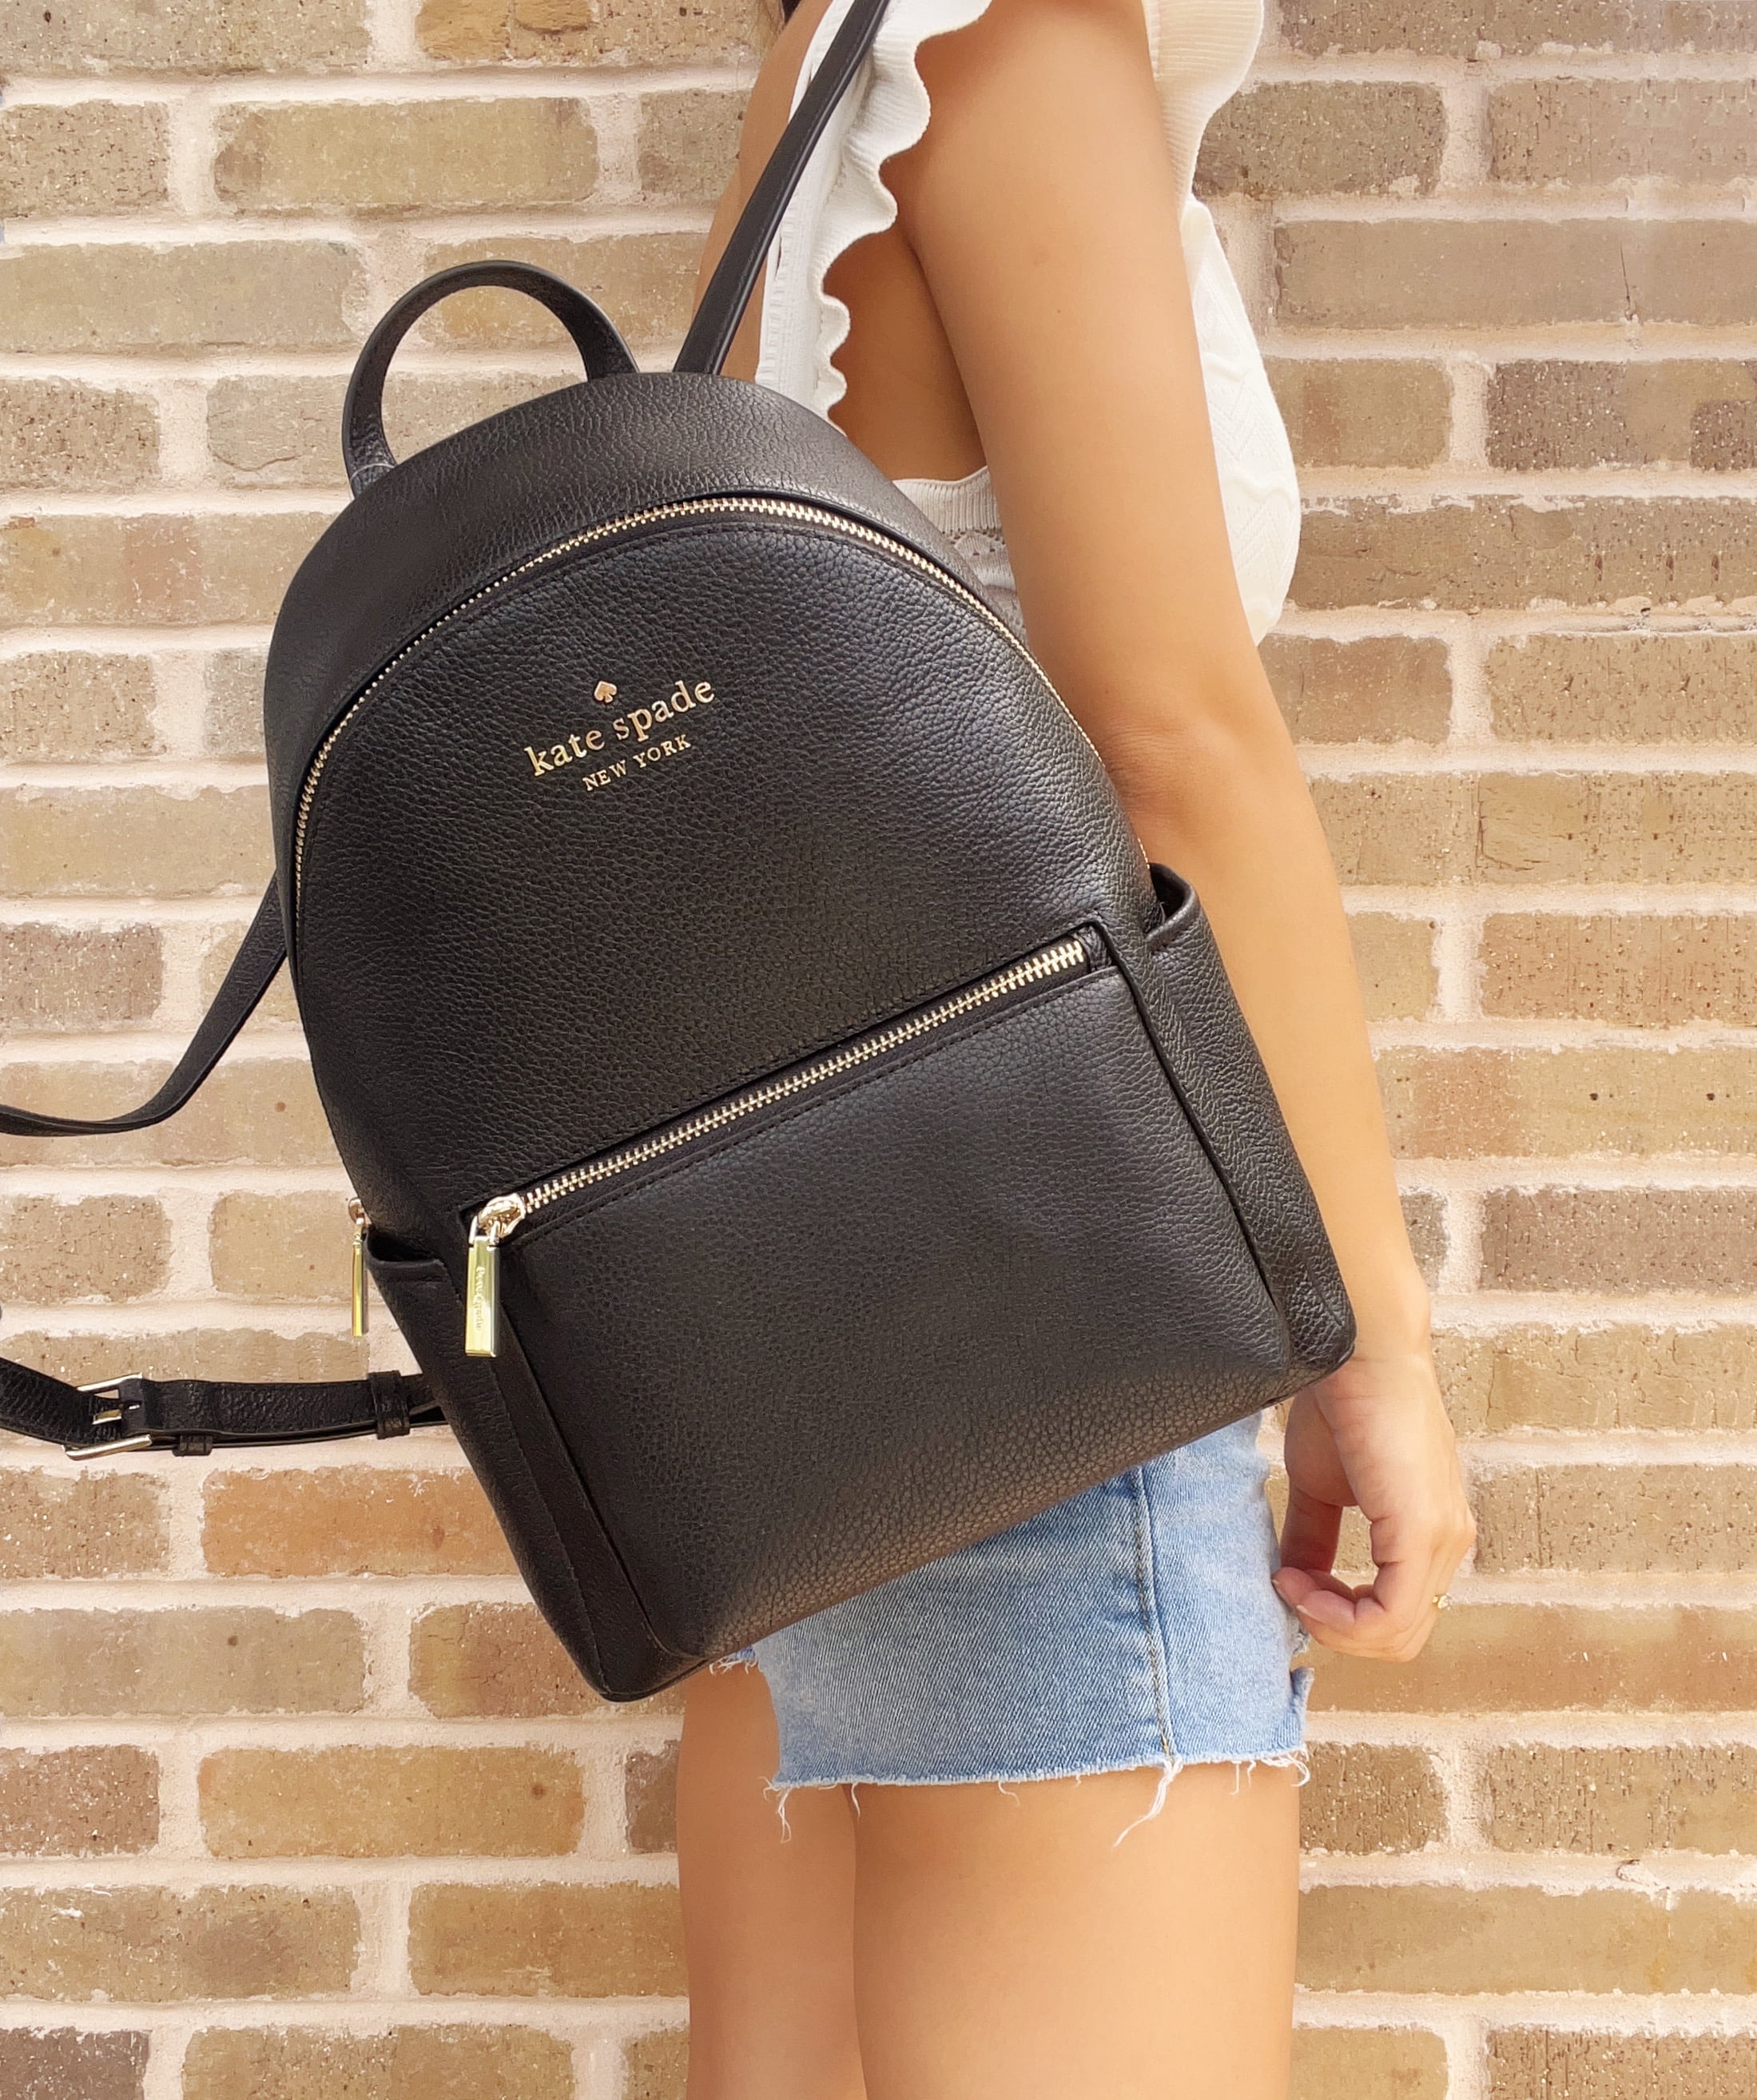 Kate Spade Leila Medium Black Pebbled Leather Dome Shoulder Backpack  Bookbag | eBay